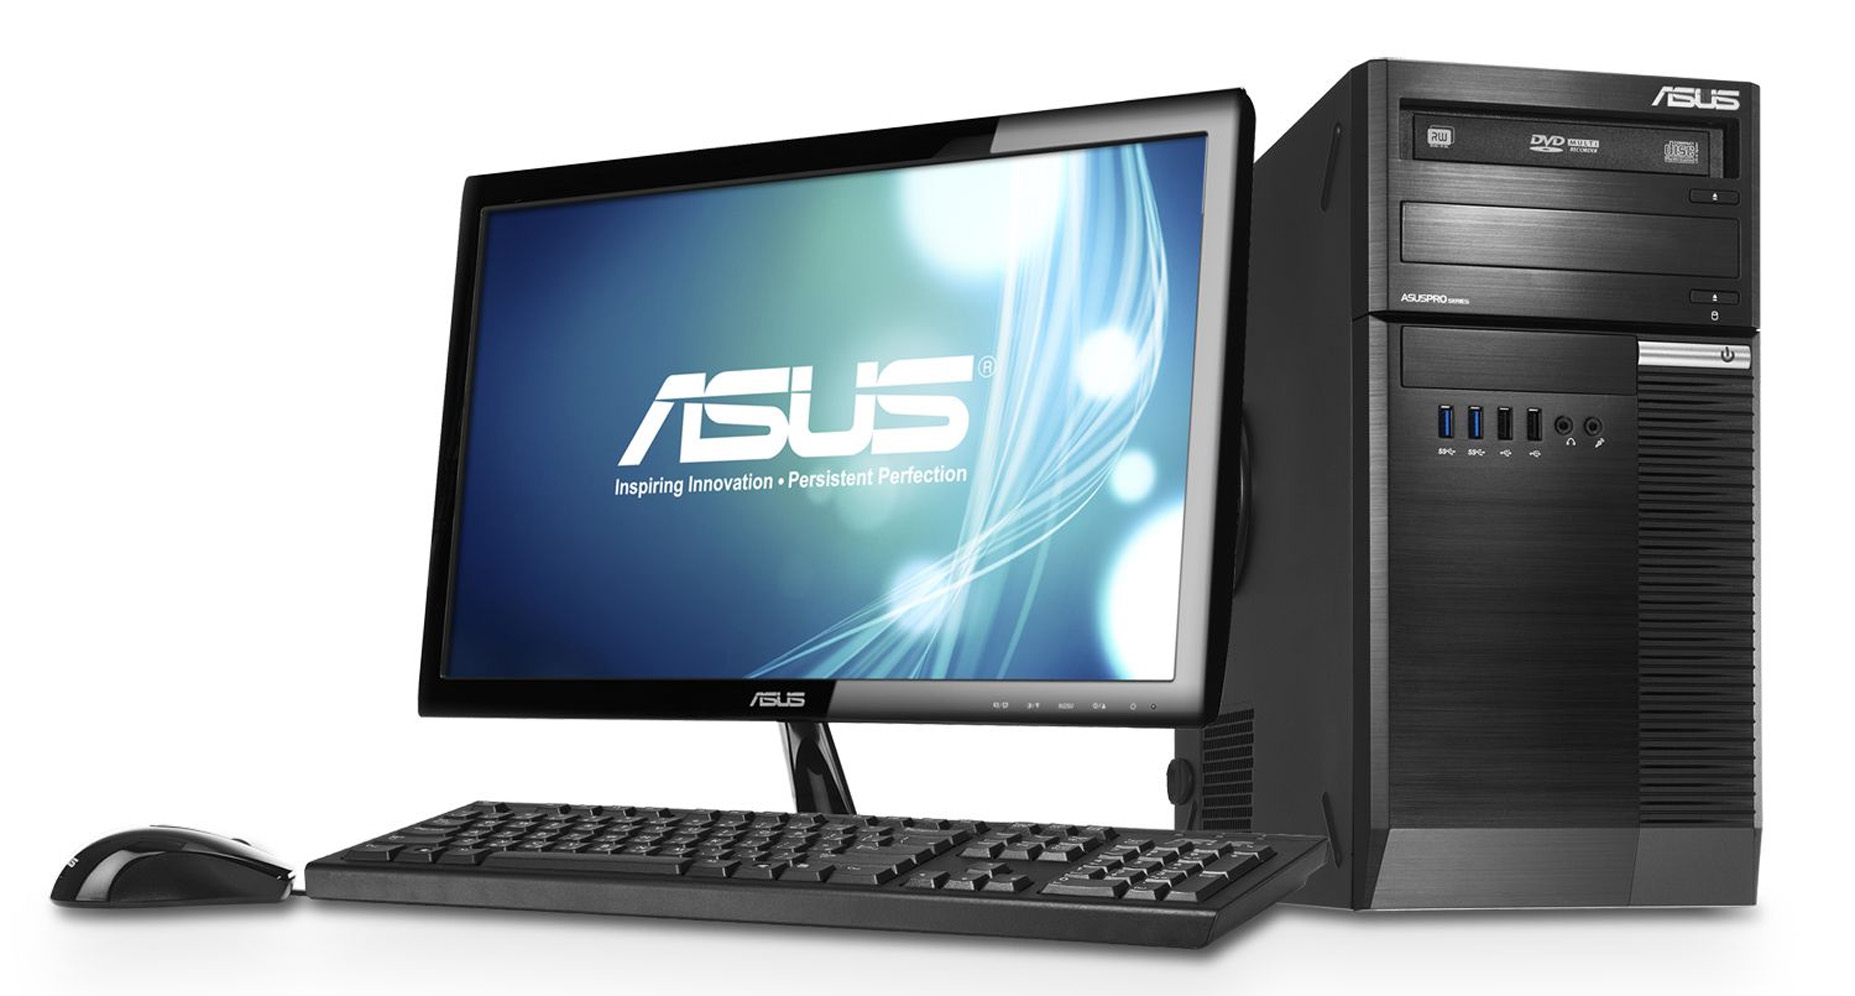 Harga Asus BM6820 Intel Core i3-3220